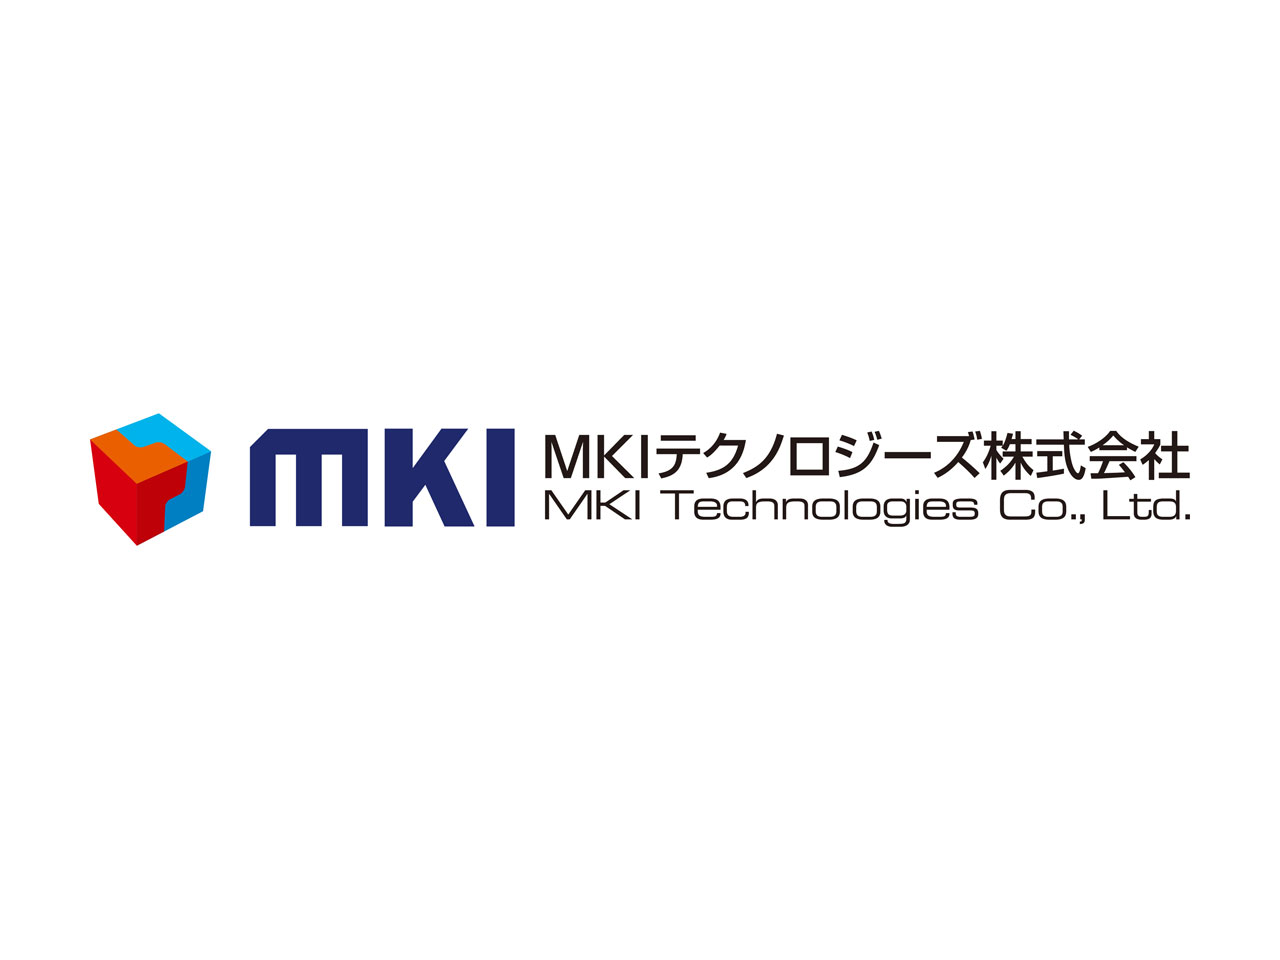 同社は、2007年10月に三井情報株式会社の子会社であるMKIテクノサービス株式会社と、エムケイアイソフトウェアサービス株式会社が統合して誕生した。